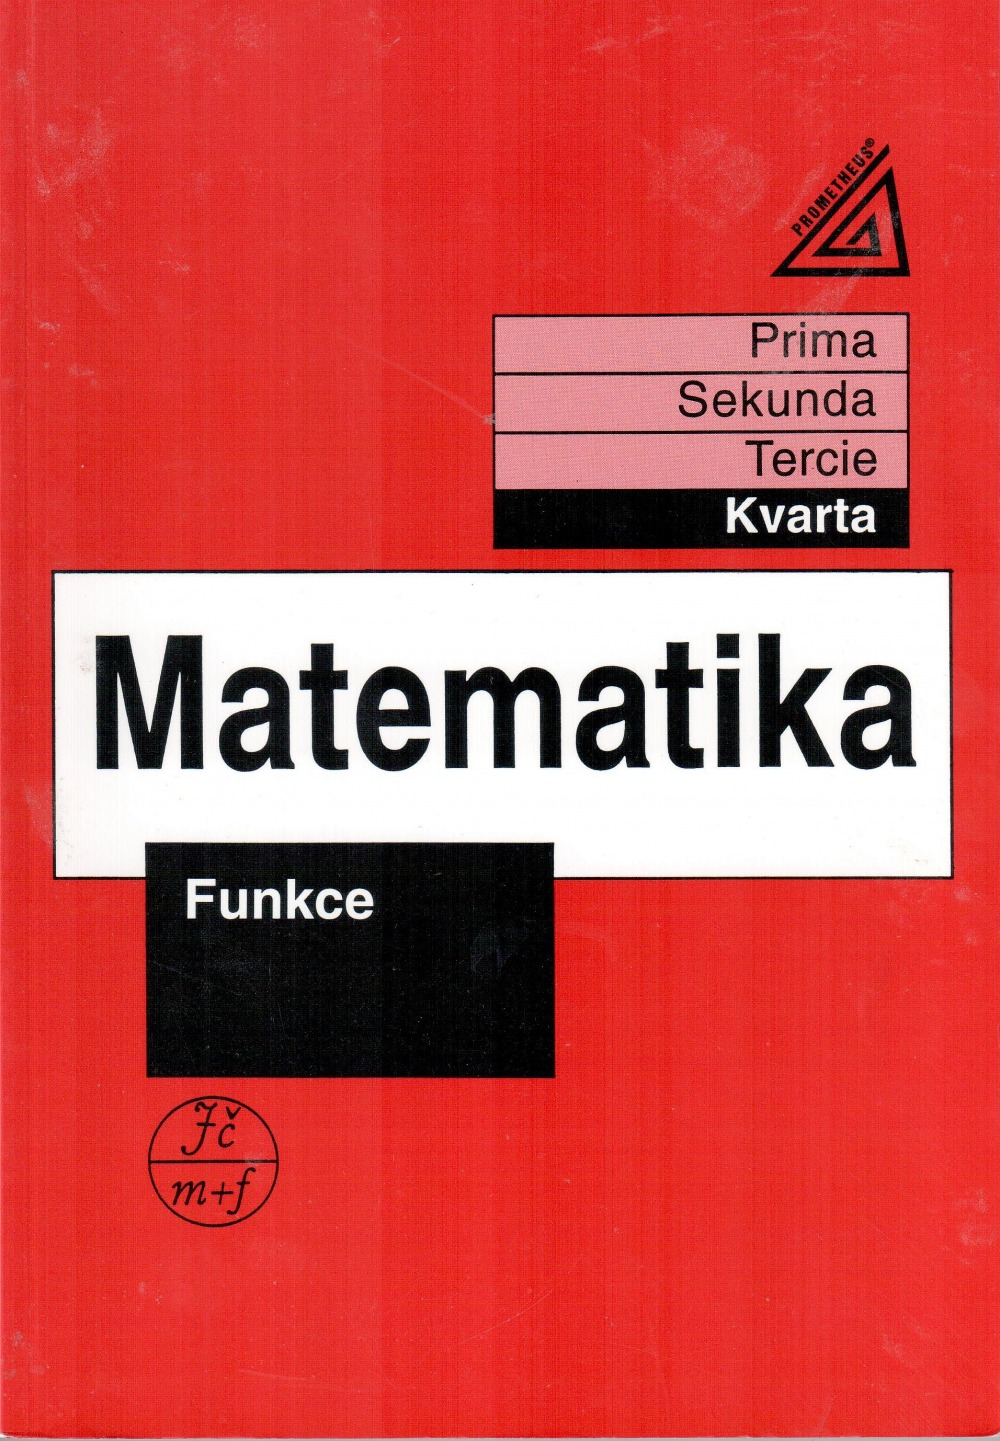 Matematika - Funkce